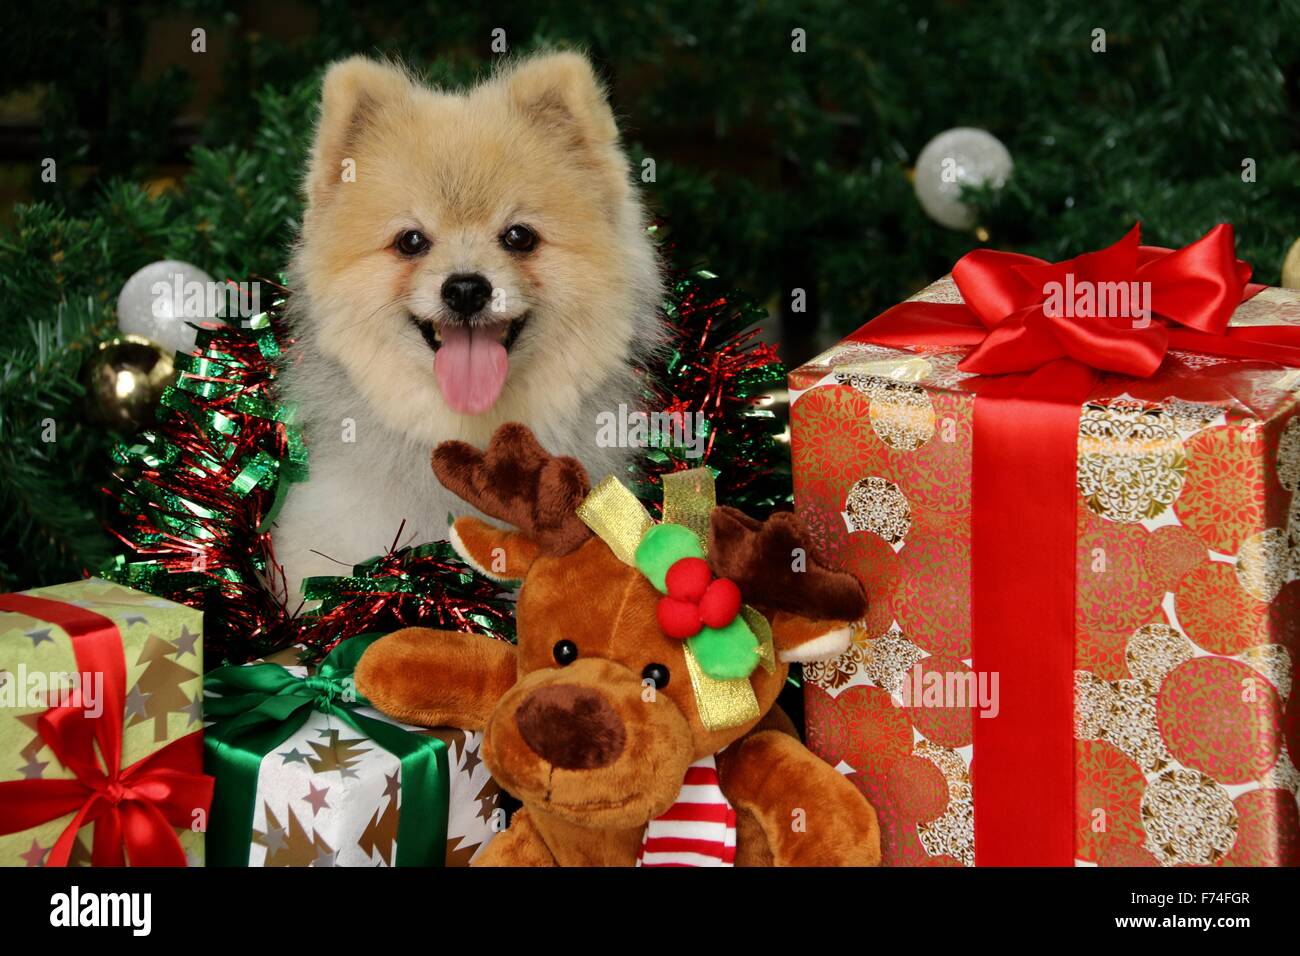 Pomeranian dog posing among Christmas goodies Stock Photo